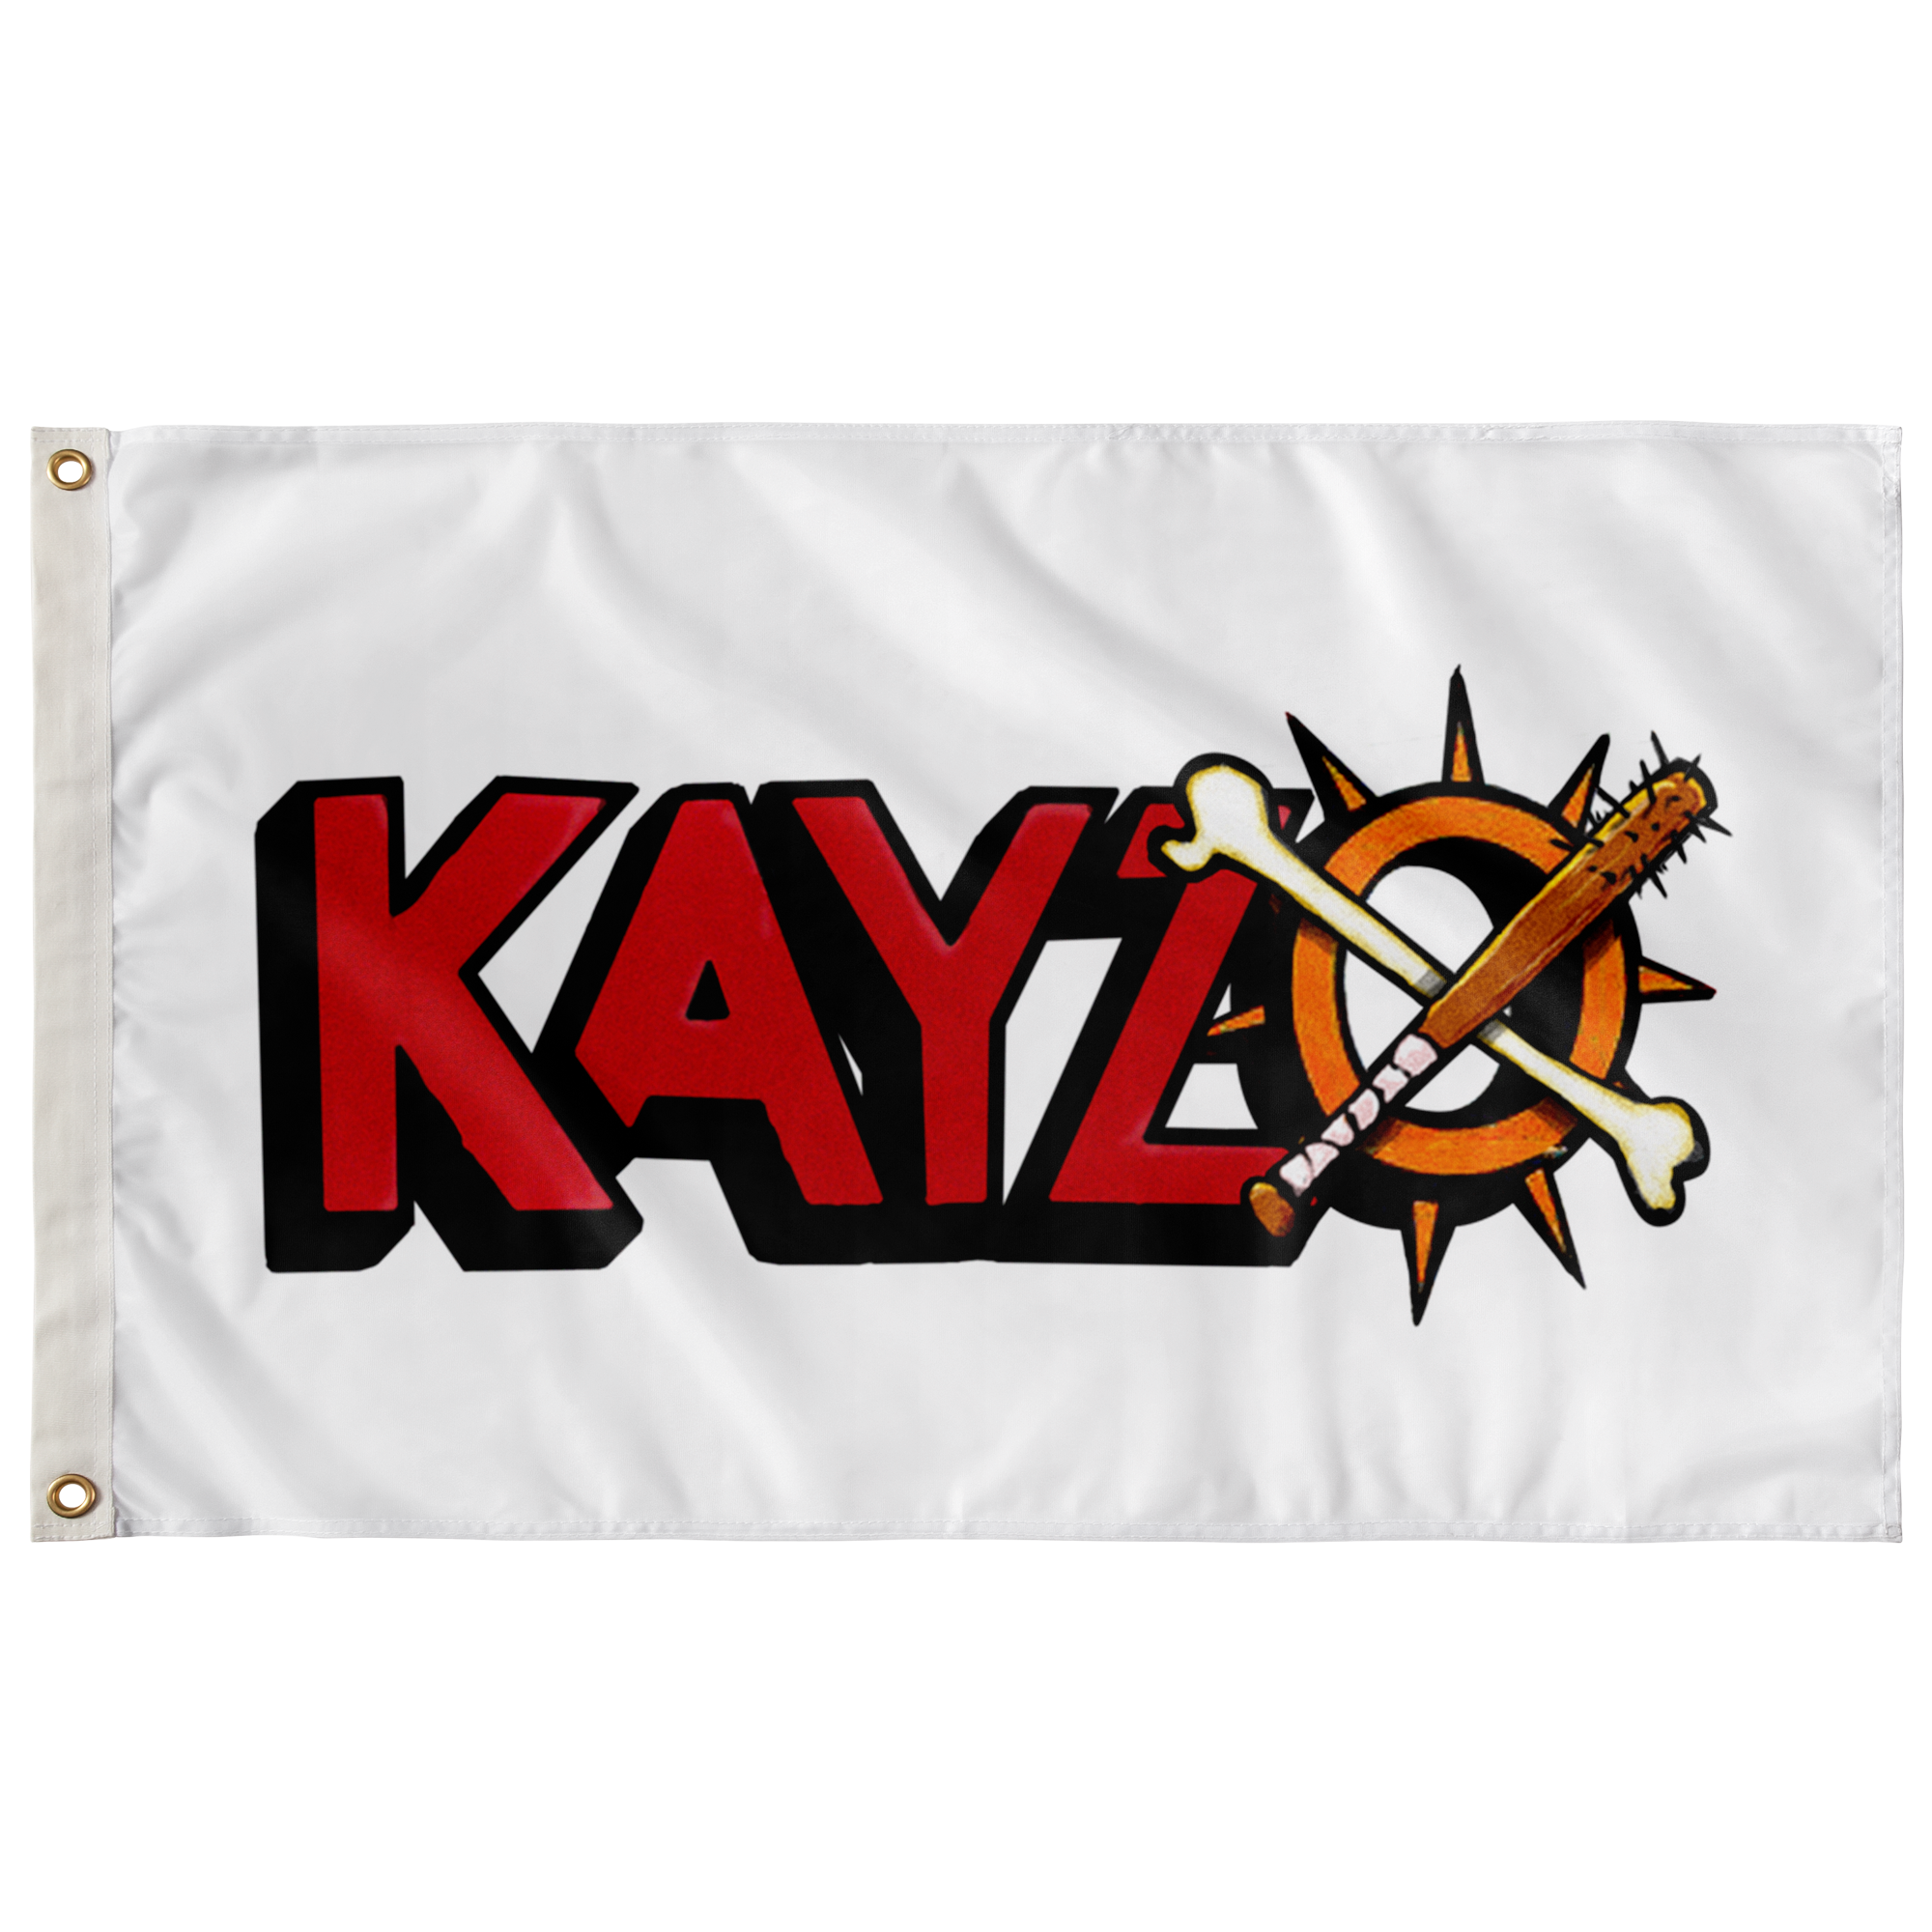 KAYZO FLAG.